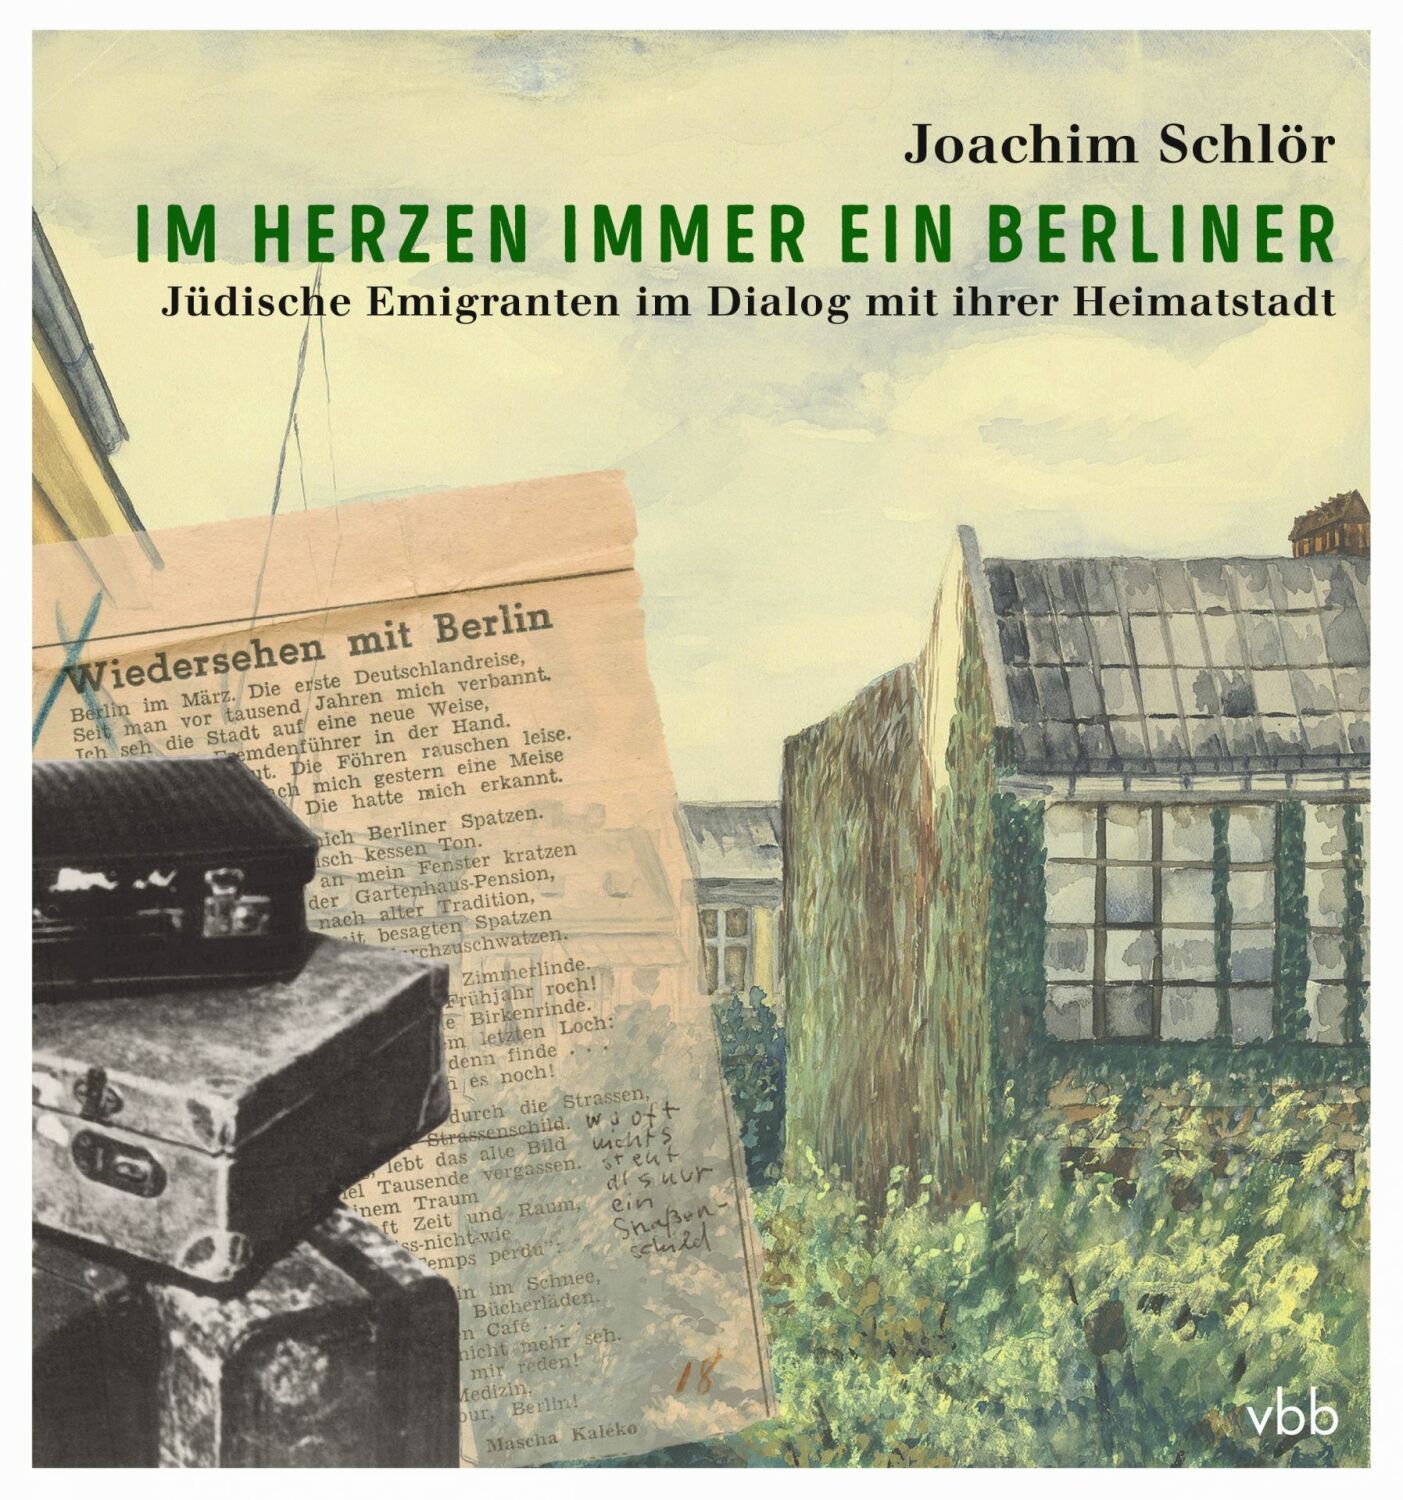 In seinem Buch "Im Herzen immer ein Berliner - Jüdische Emigranten im Dialog mit ihrer Heimatstadt" gibt Joachim Schlör Einblicke in die Korrespondenz zum Berliner Gedenkbuch